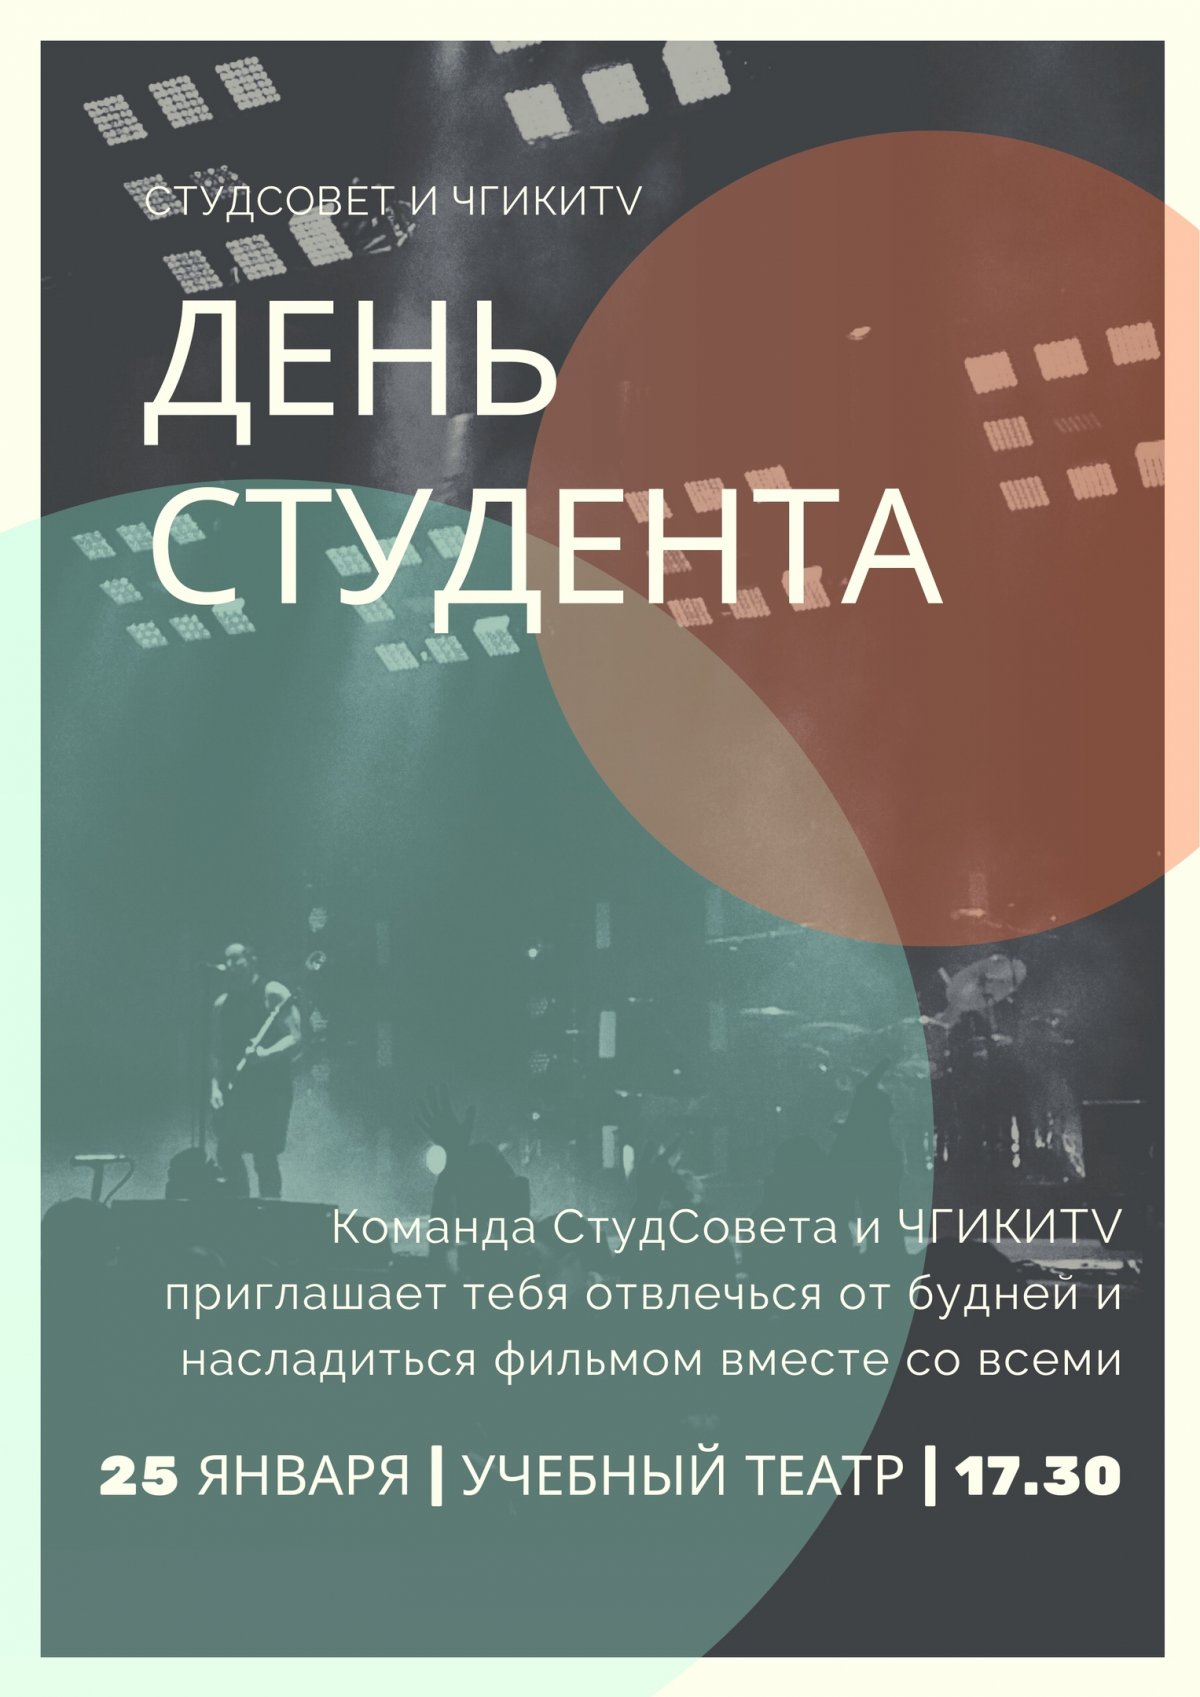 🎓 Мероприятия Чувашского государственного института культуры и искусств ко Дню российского студенчества!